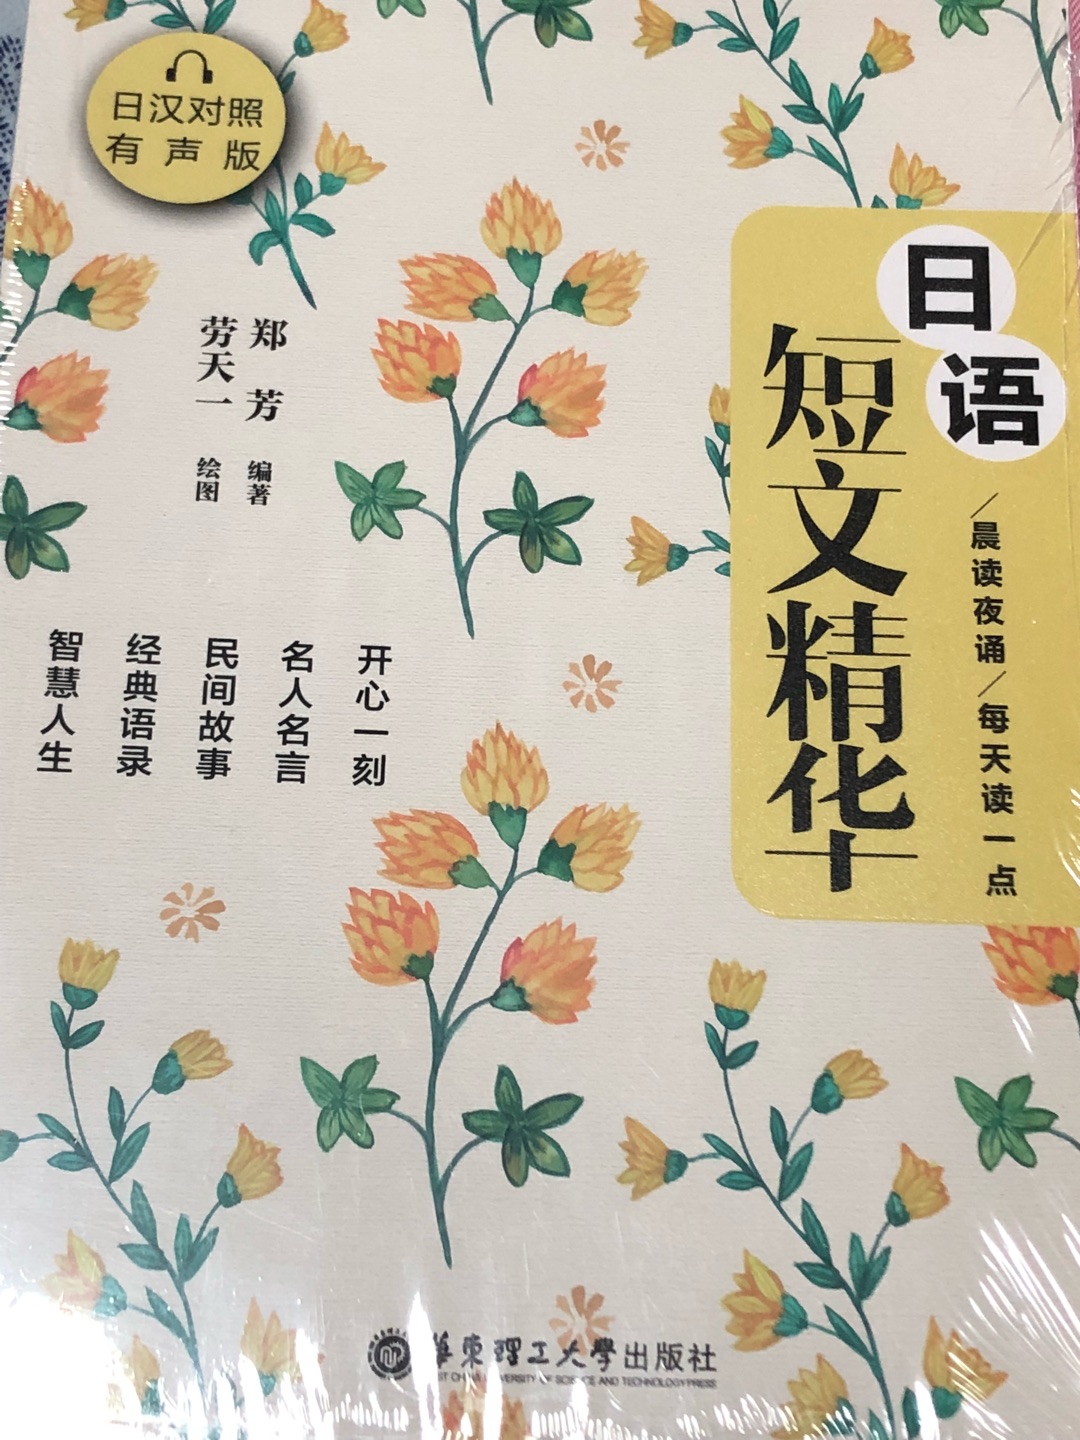 训练日语阅读用的，应该蛮有用的，书籍质量也不错，整体满意。